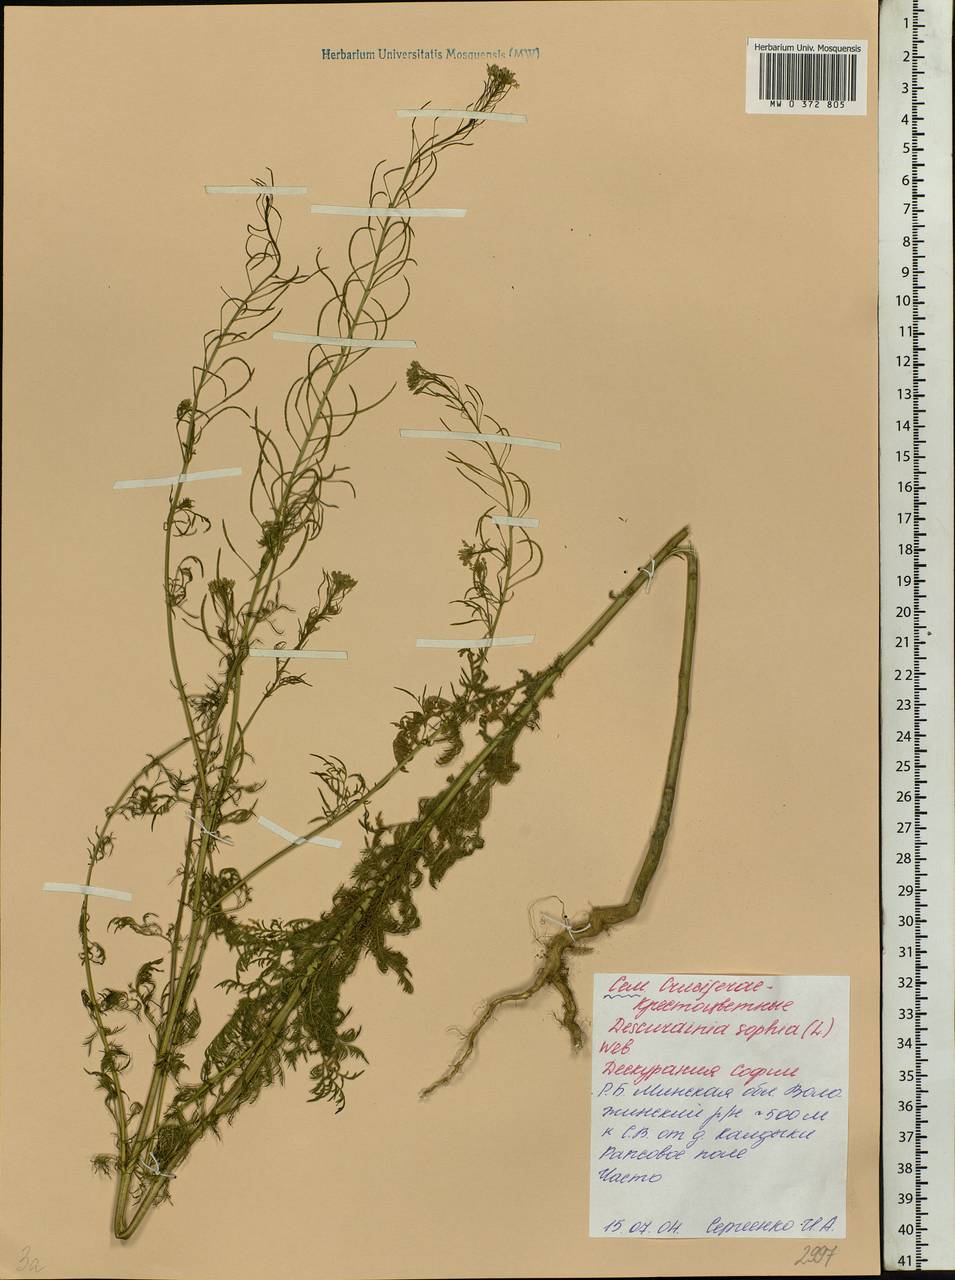 Descurainia sophia (L.) Webb ex Prantl, Eastern Europe, Belarus (E3a) (Belarus)